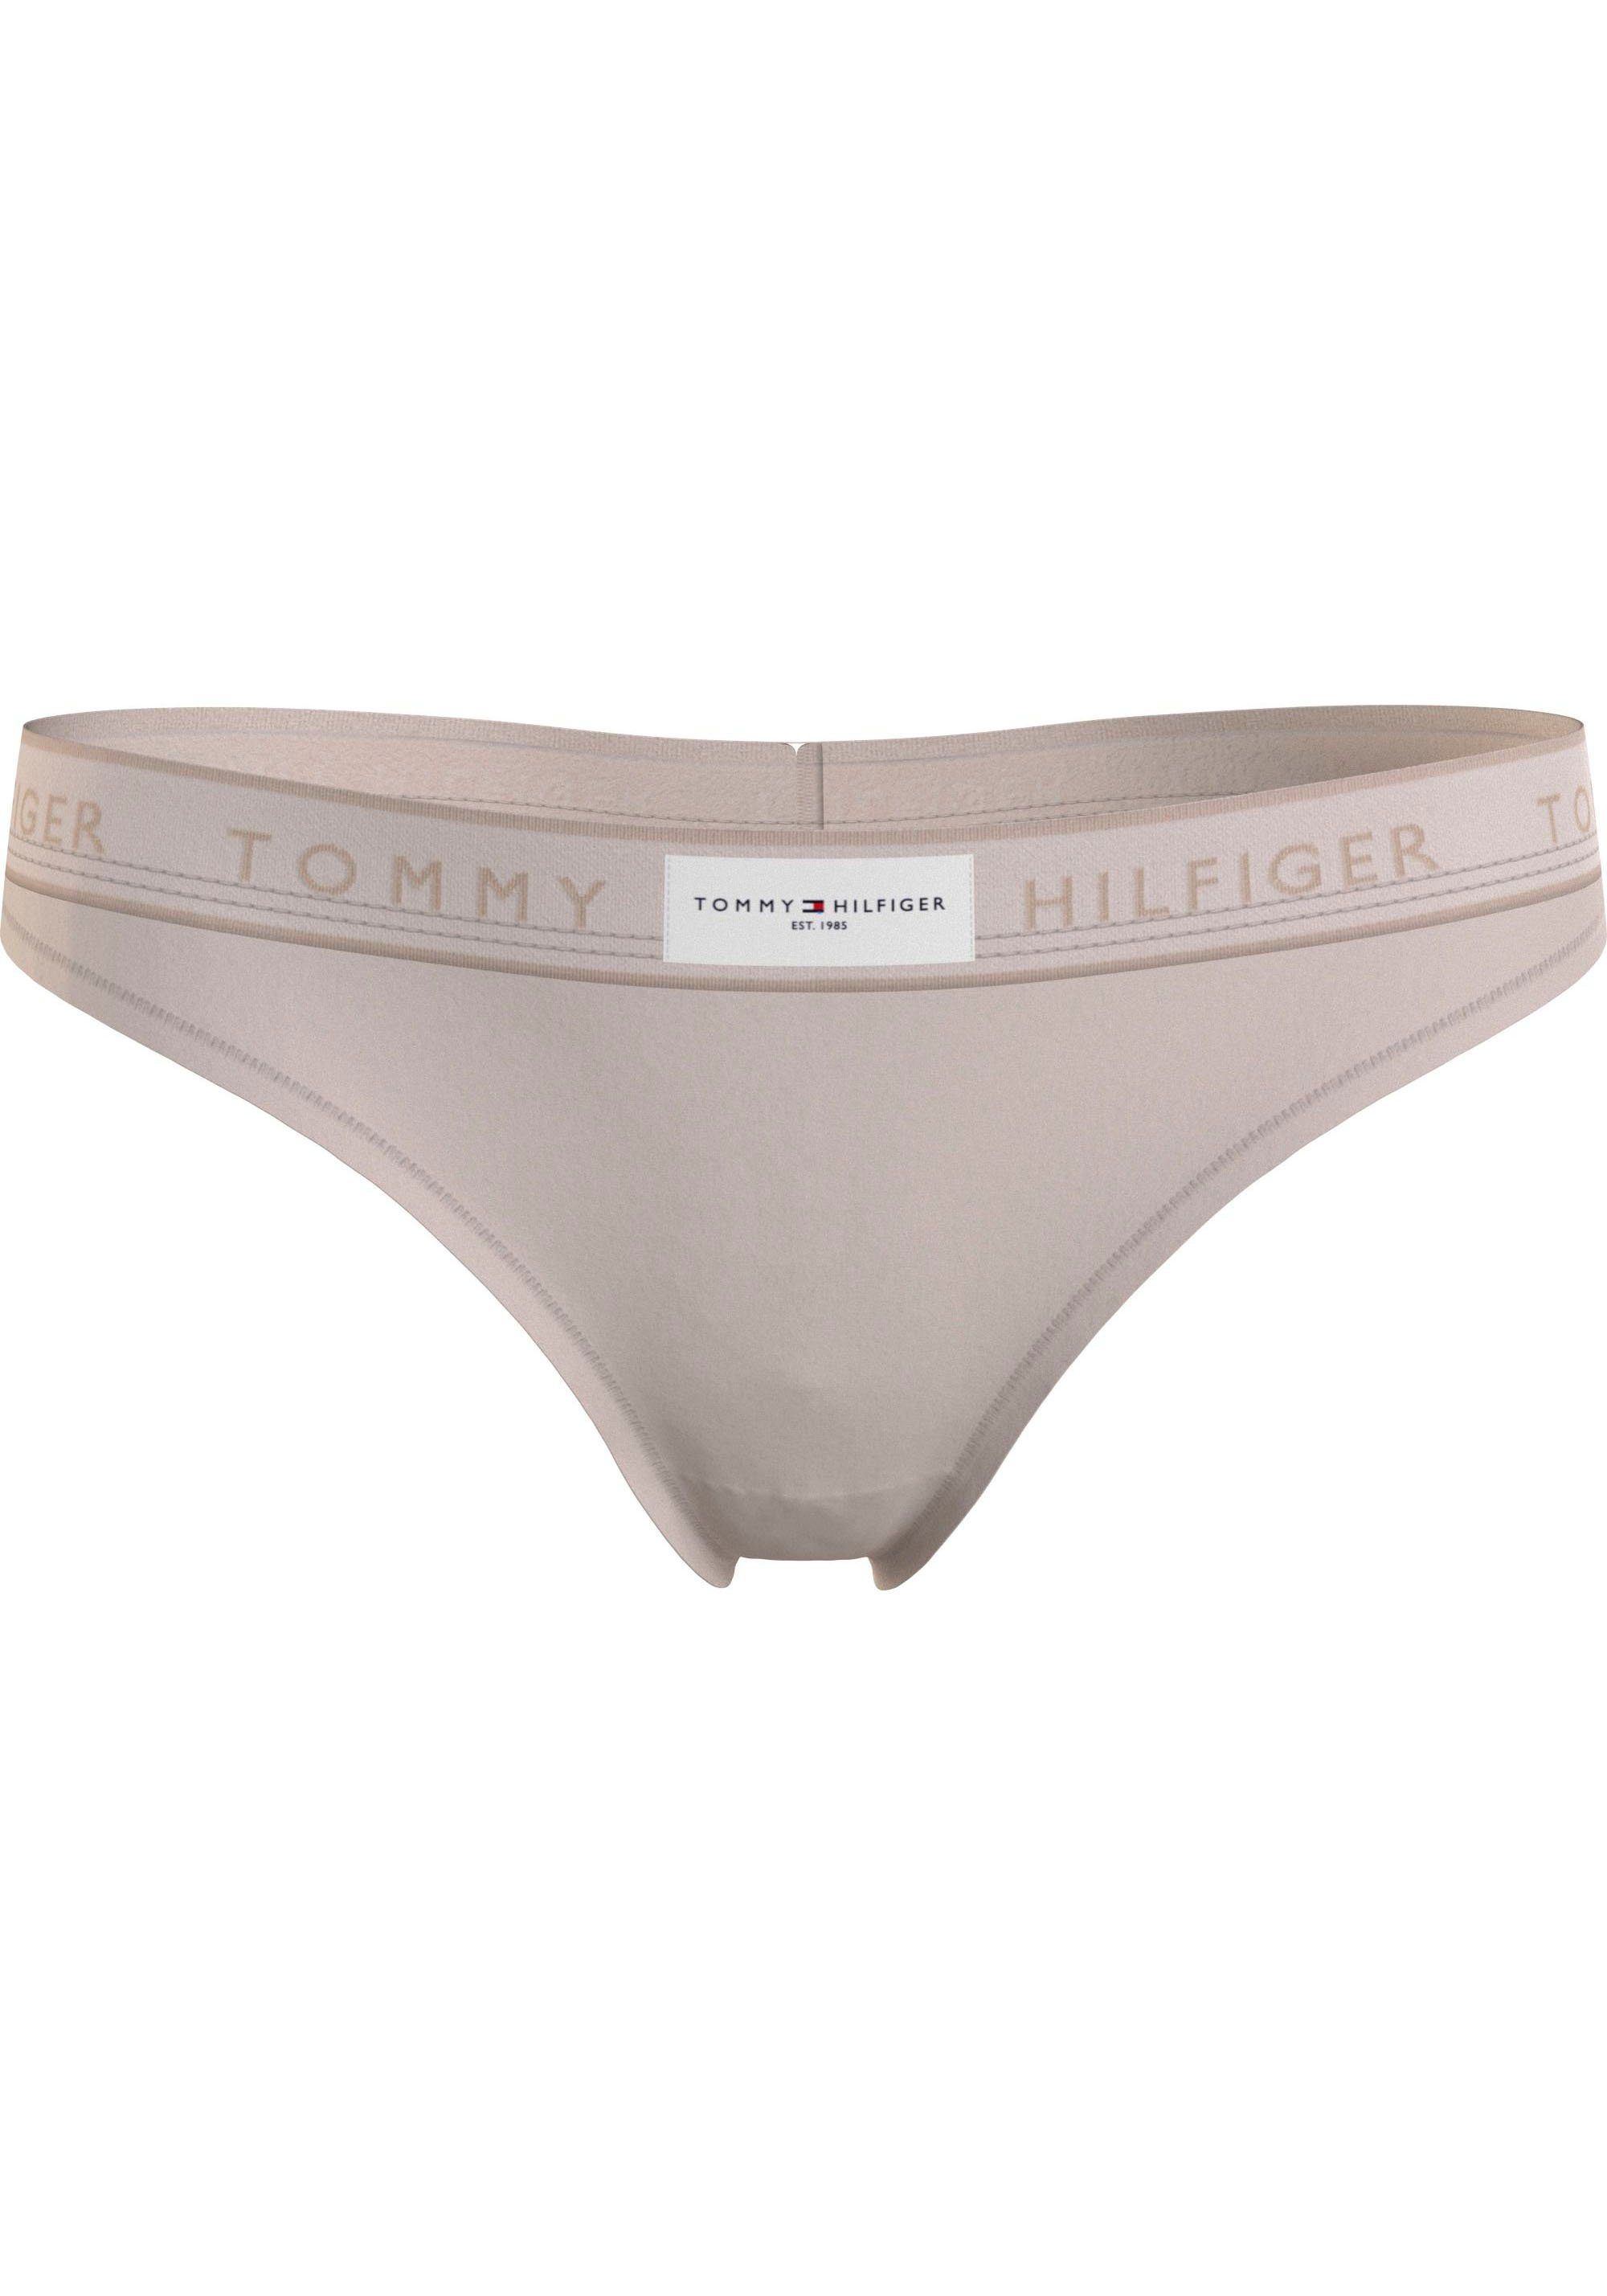 Tommy Hilfiger Underwear String THONG (EXT SIZES) mit Tommy Hilfiger Logobund Chasmere_Creme